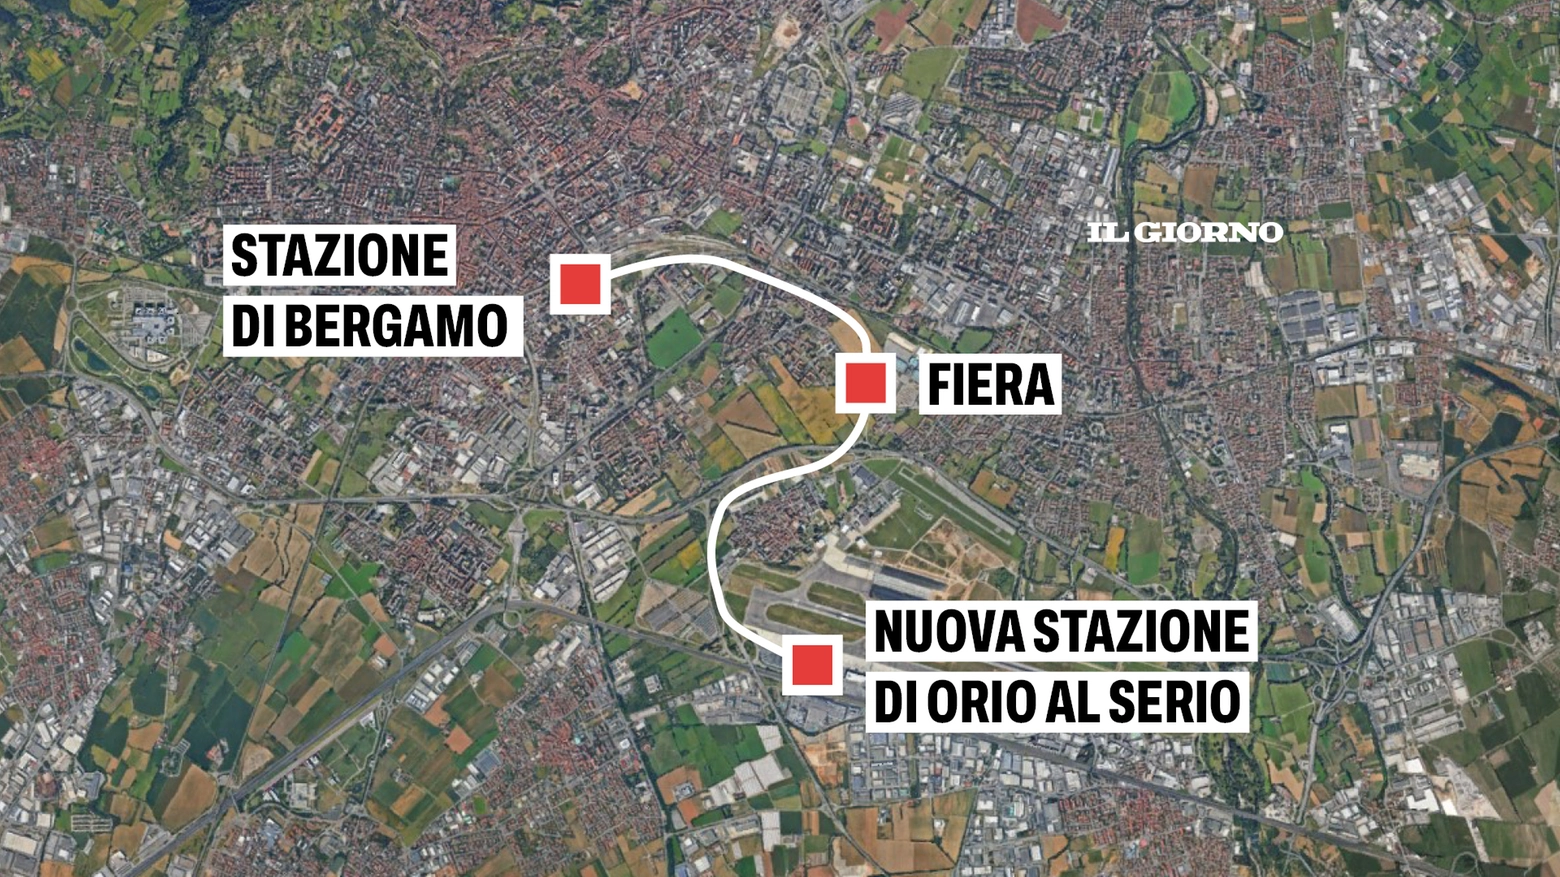 Il nuovo tratto ferroviario tra Bergamo e Orio al Serio, secondo il progetto